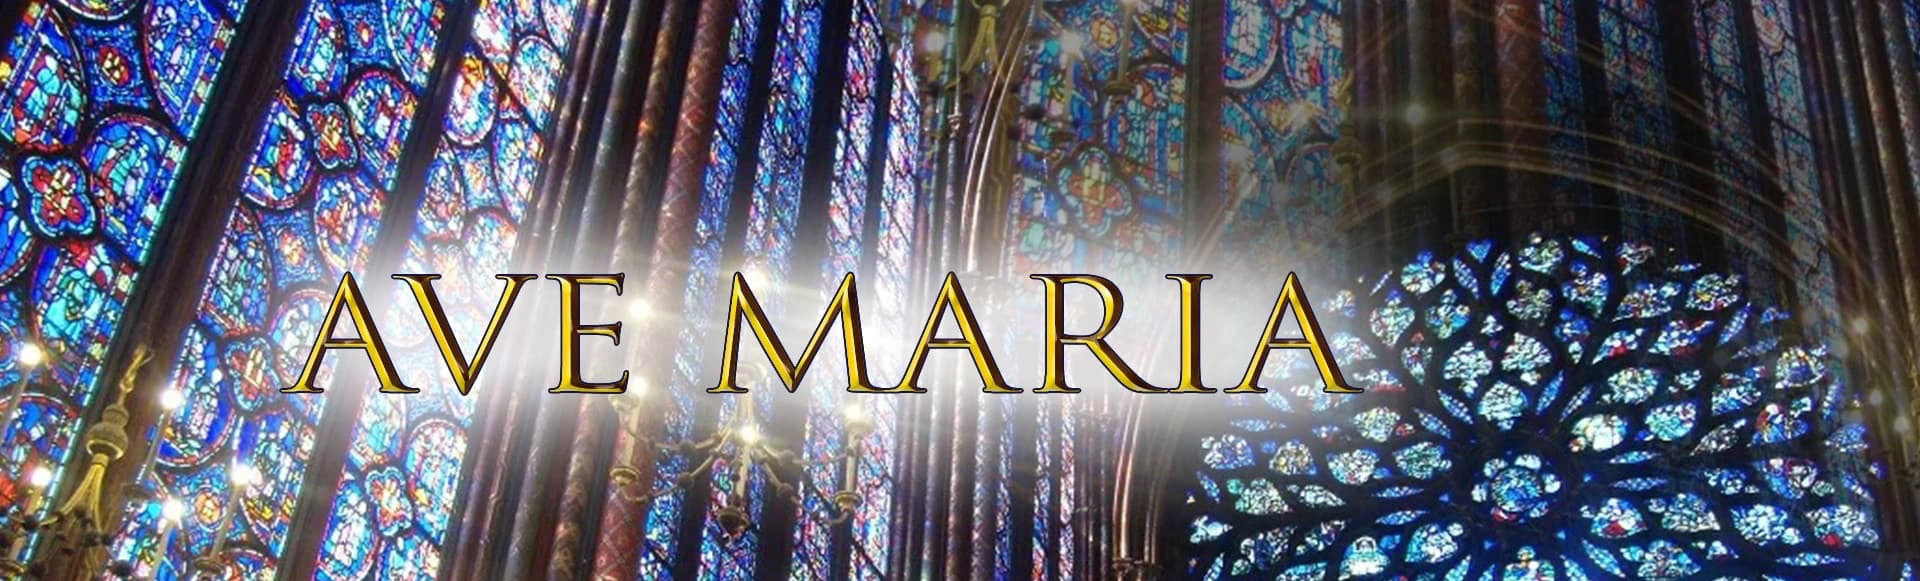 Концерт «Ave Maria. Знаменитые версии великого произведения» пройдет в КЗ Зарядье!